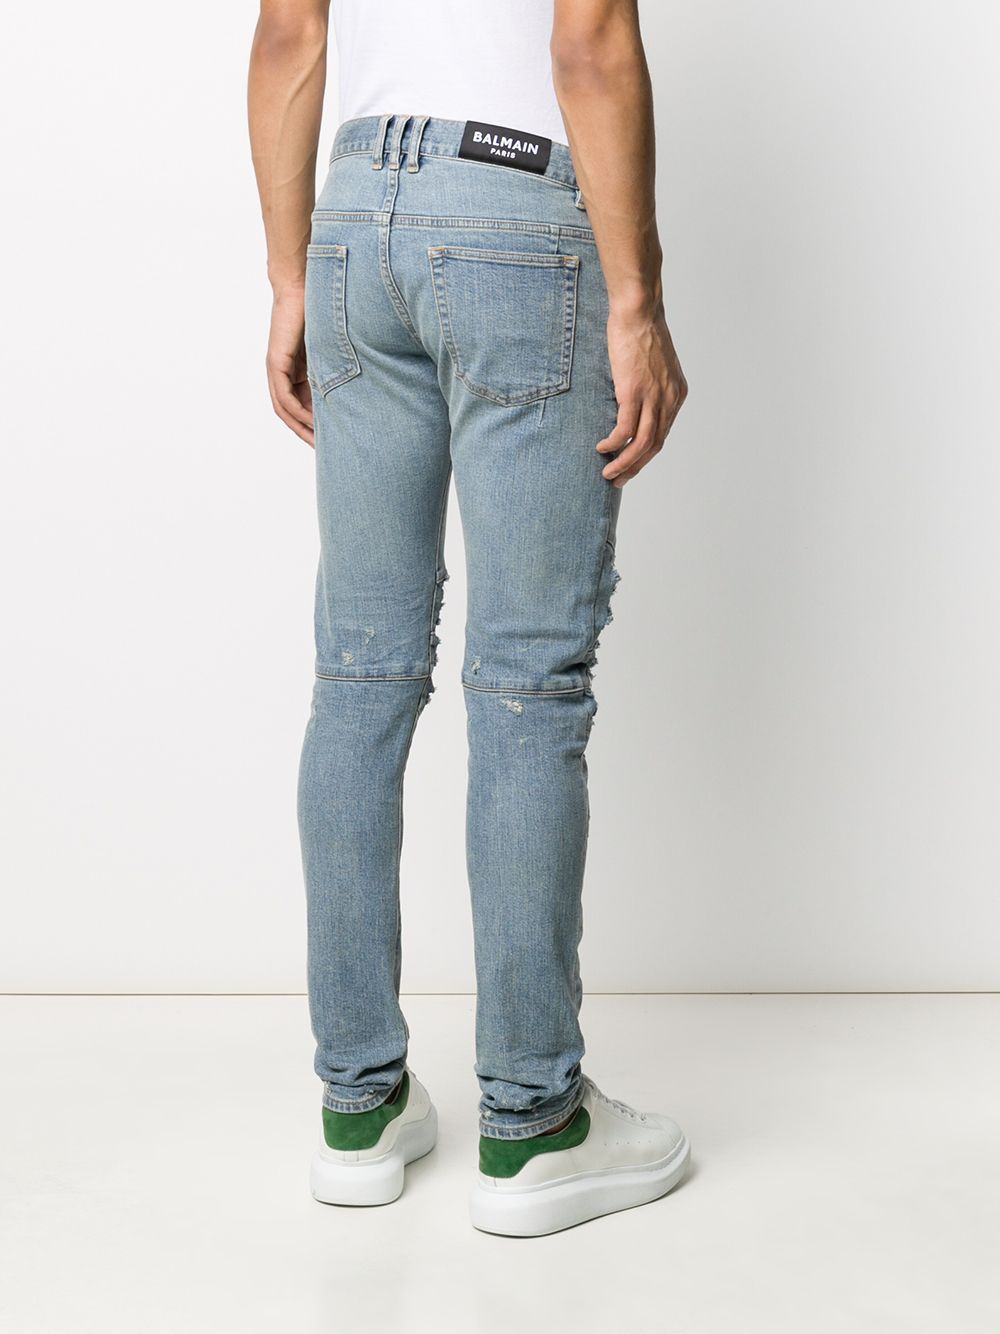 фото Balmain джинсы кроя слим с прорезями